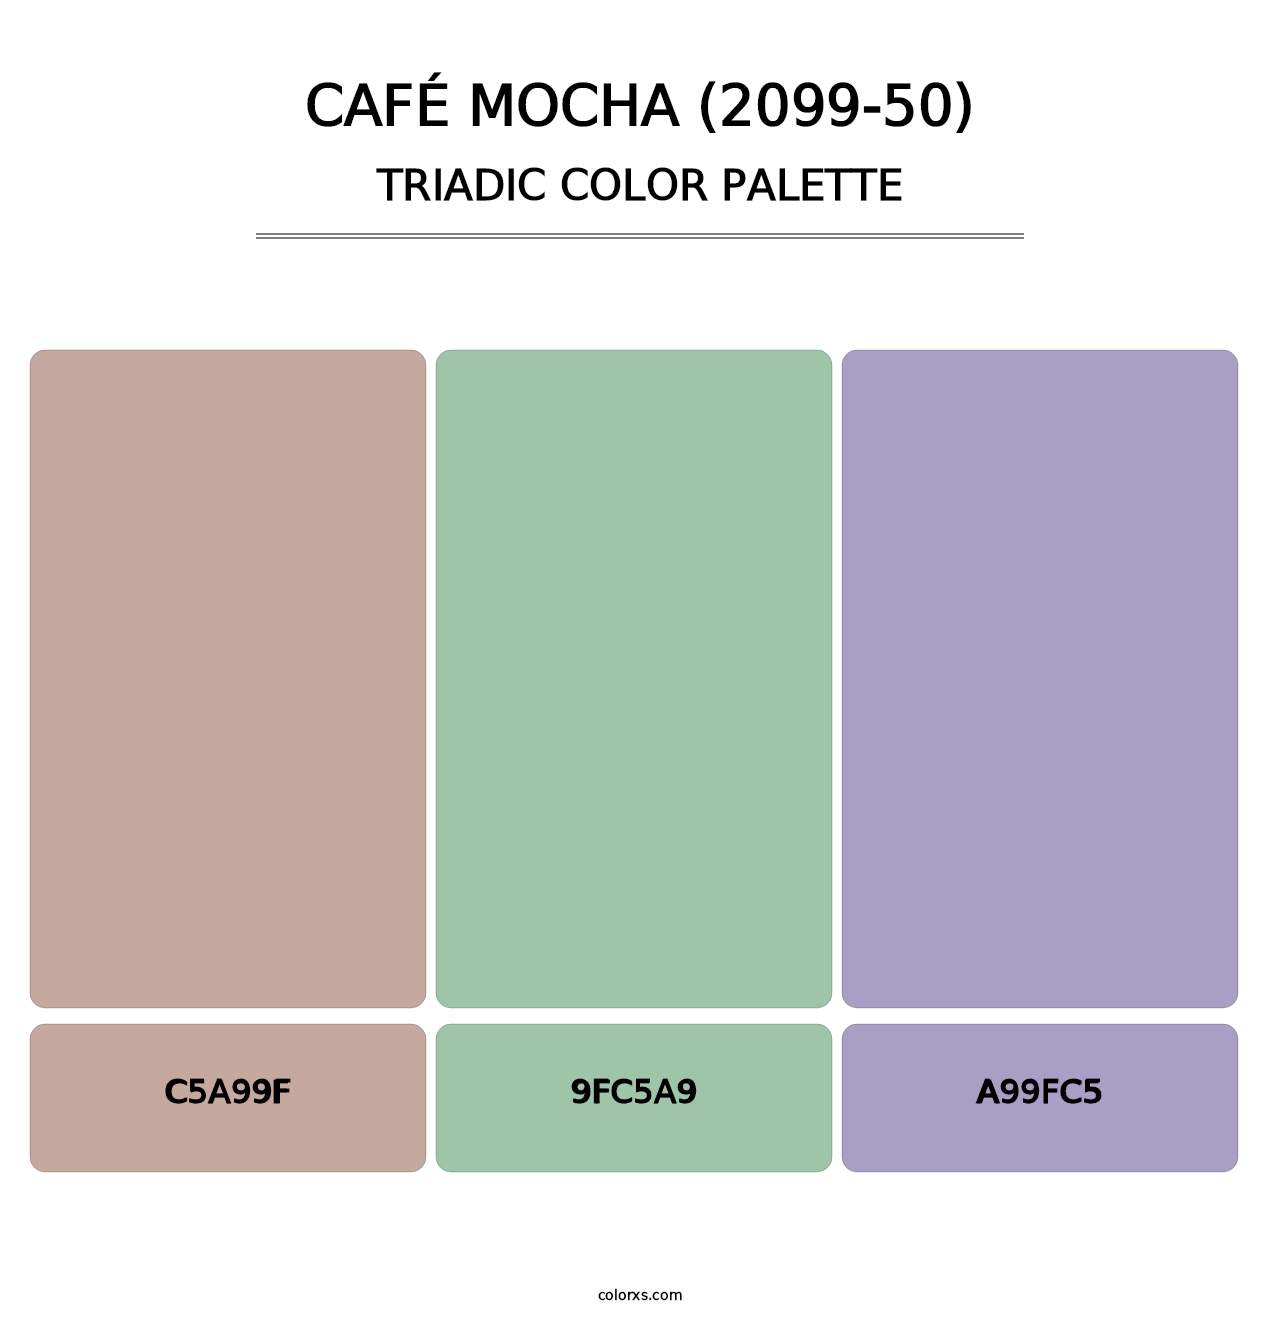 Café Mocha (2099-50) - Triadic Color Palette